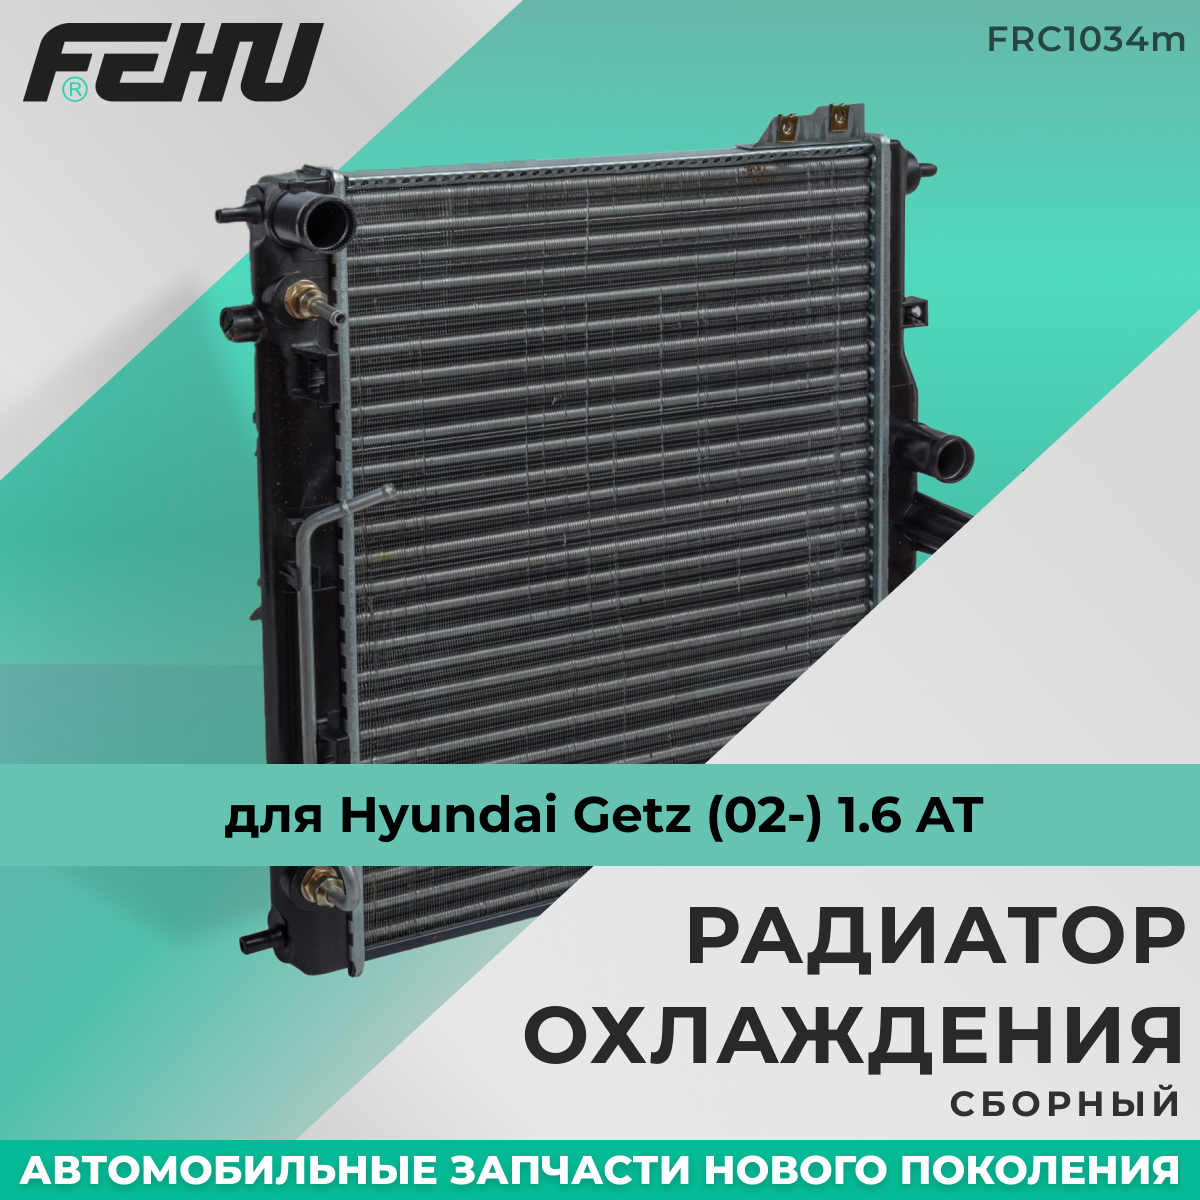 Радиатор охлаждения FEHU (феху) Hyundai Getz (02-) 1.6 AT арт. 253101C150; 253101C356; 253101C350